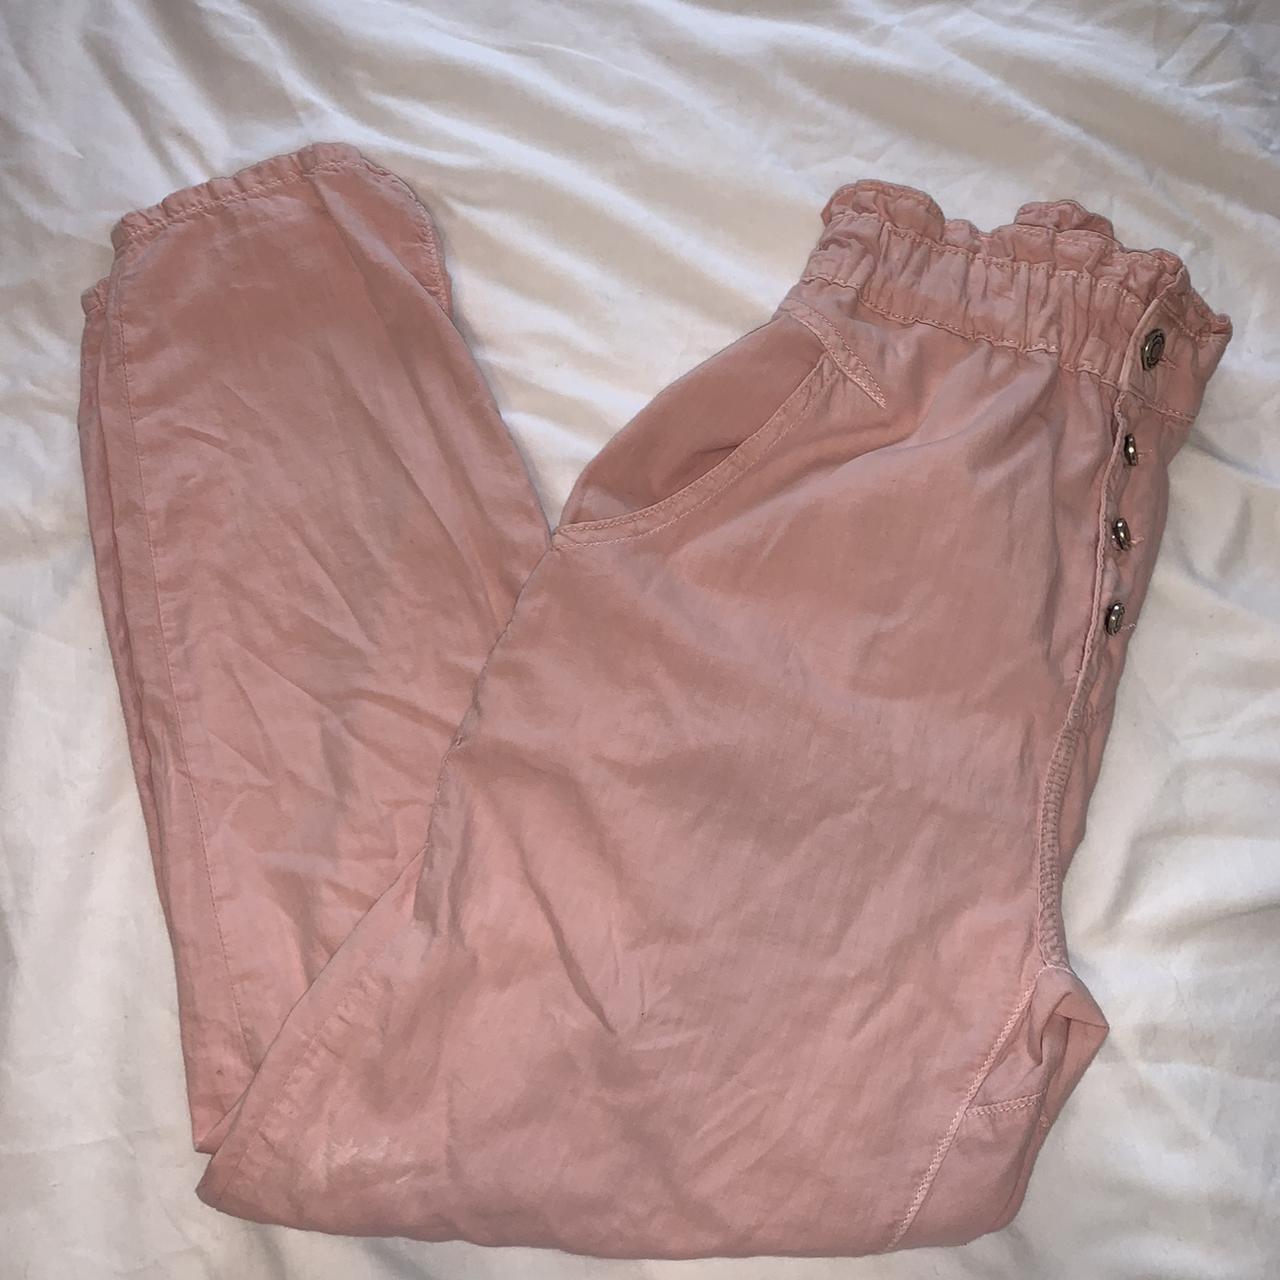 Zara Women's Trousers (3)